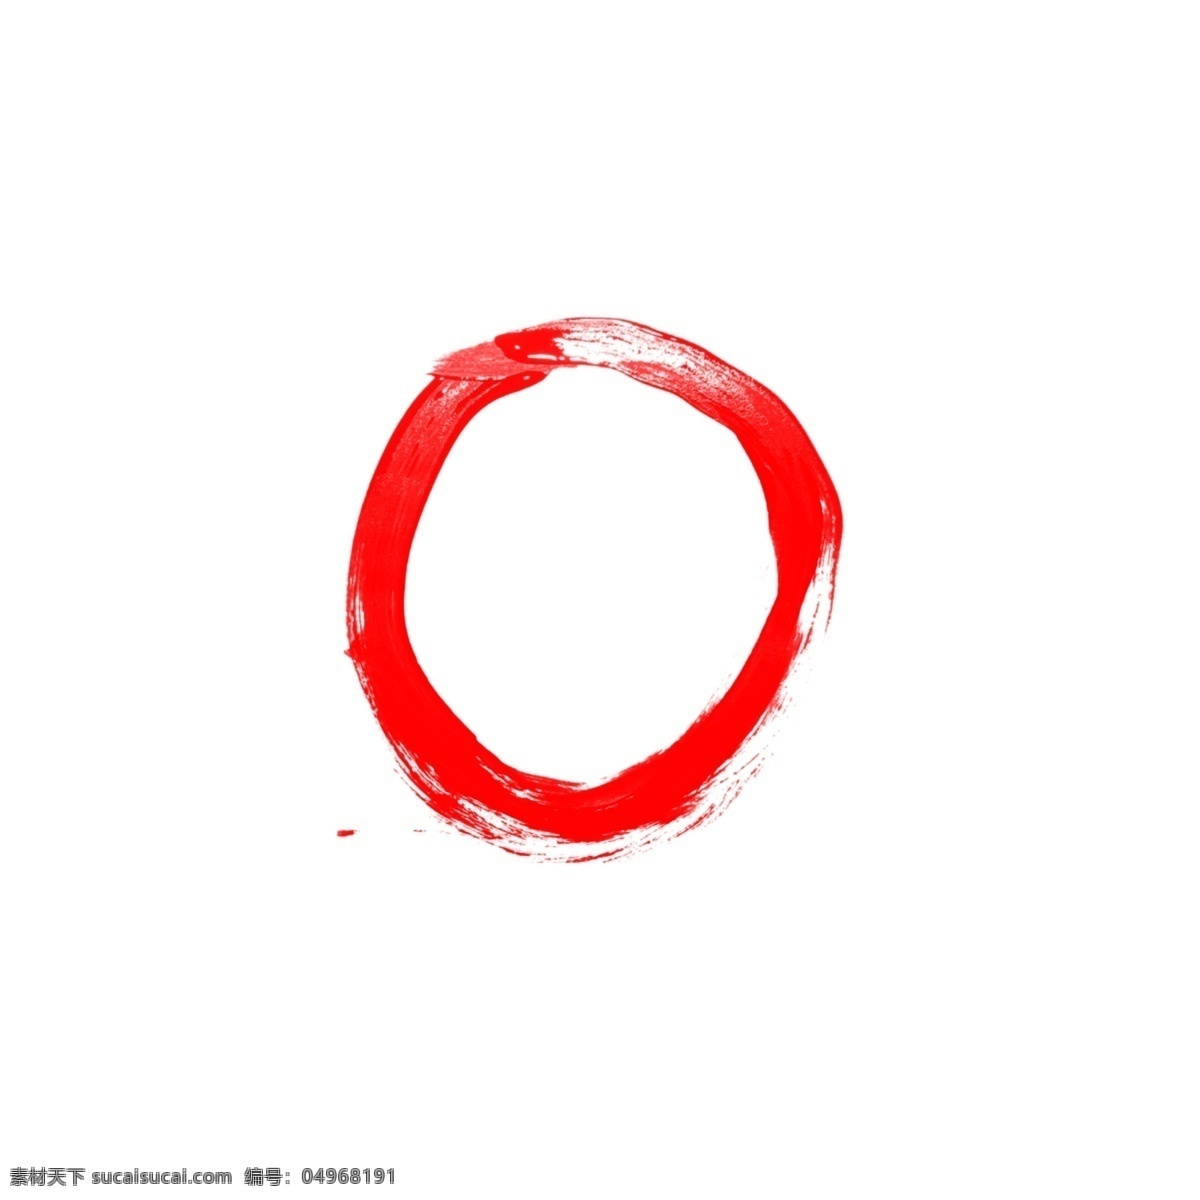 红色 圆圈 水墨 边框 商用 元素 psd素材 圆形 圆